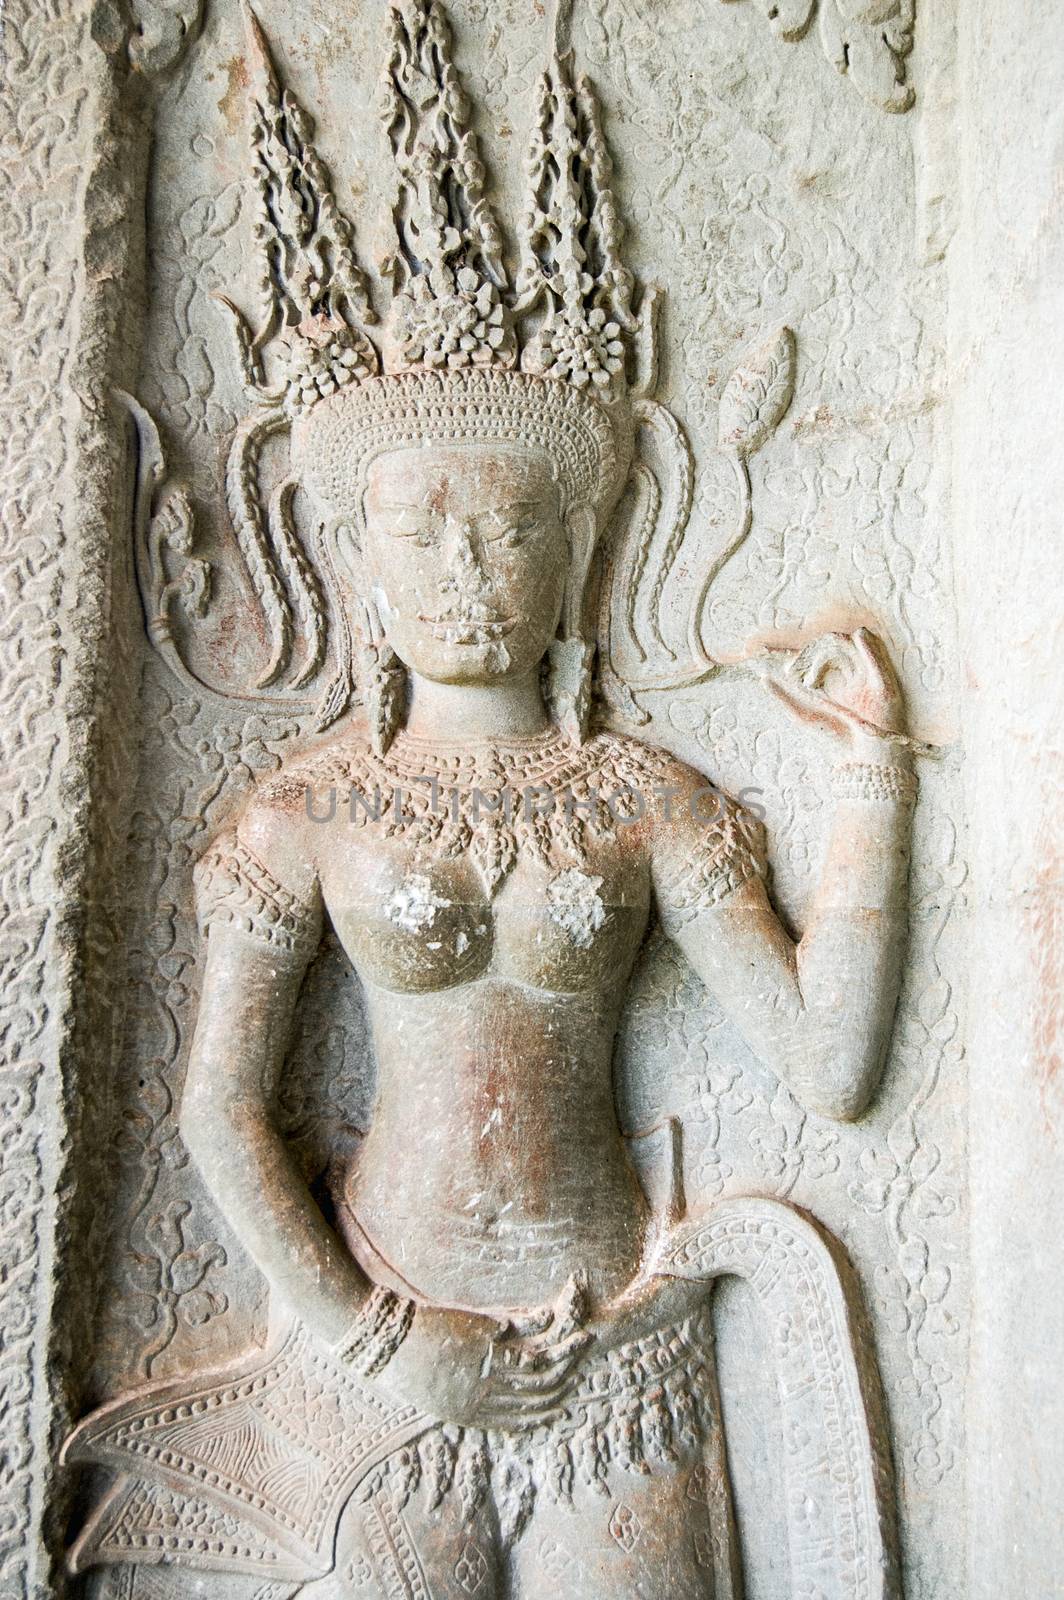 Sculpture of an Apsara dancing goddess. Interior column at Angkor Wat temple, Siem Reap, Cambodia.